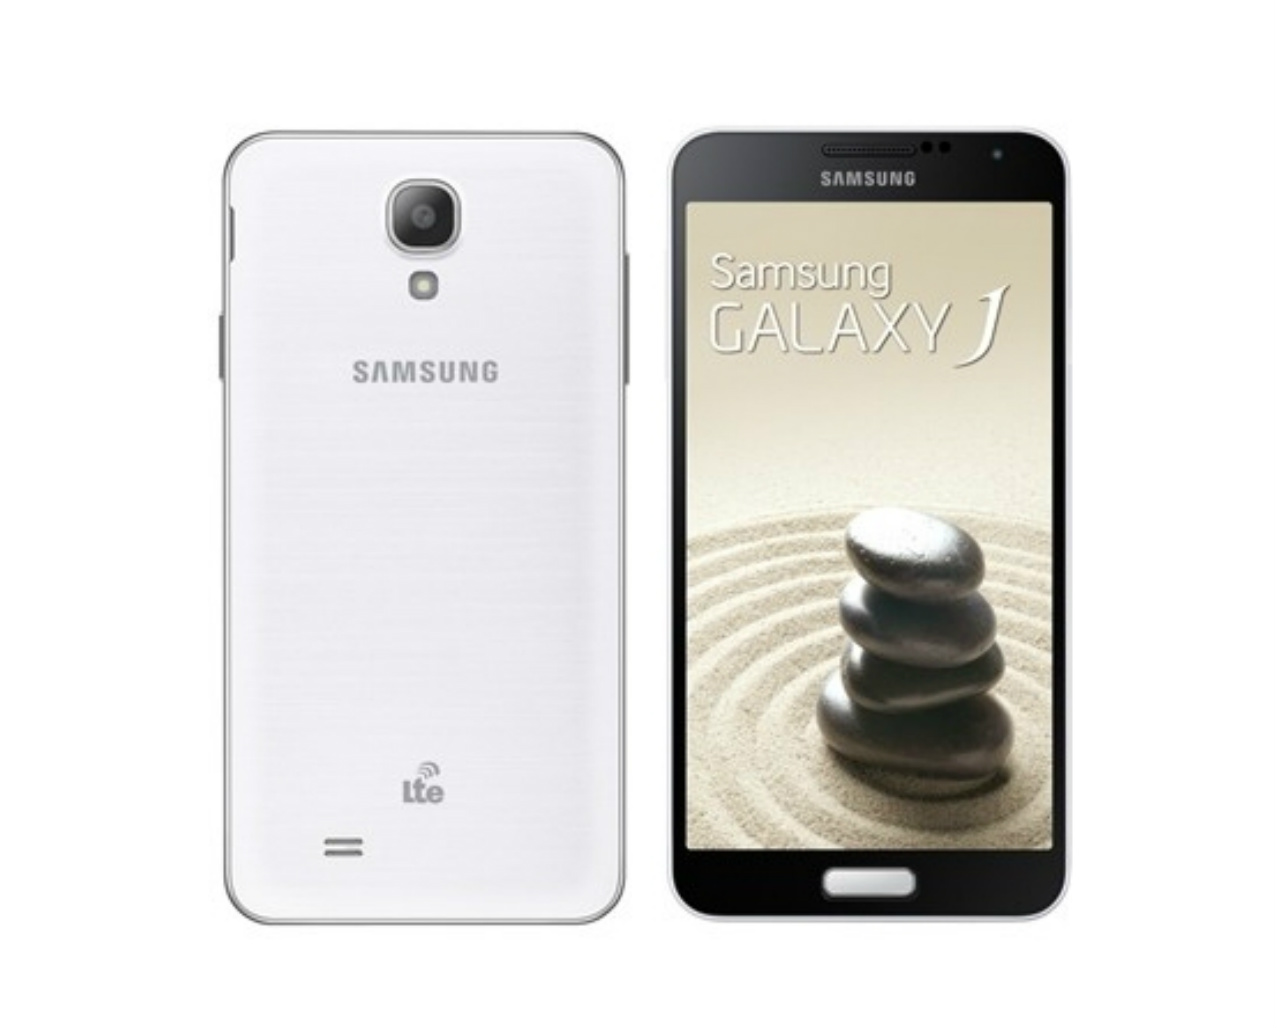 Samsung Taiwan Announces Galaxy J The Phones Guide